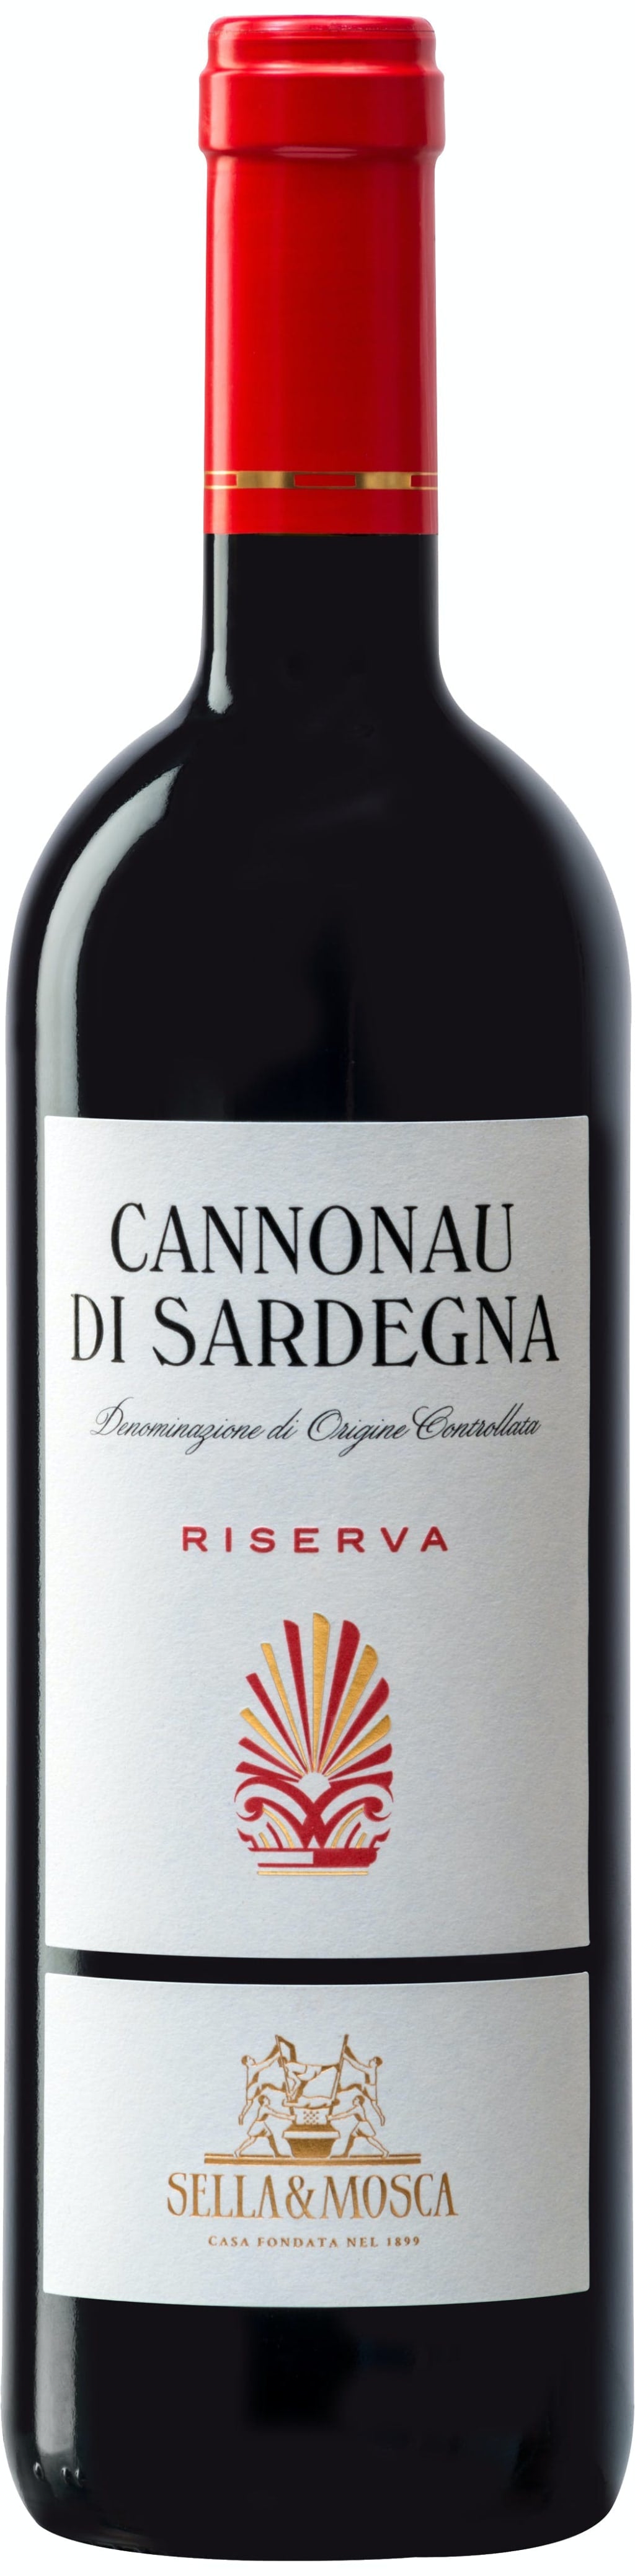 Sella & Mosca Cannonau di Sardegna Riserva 2018